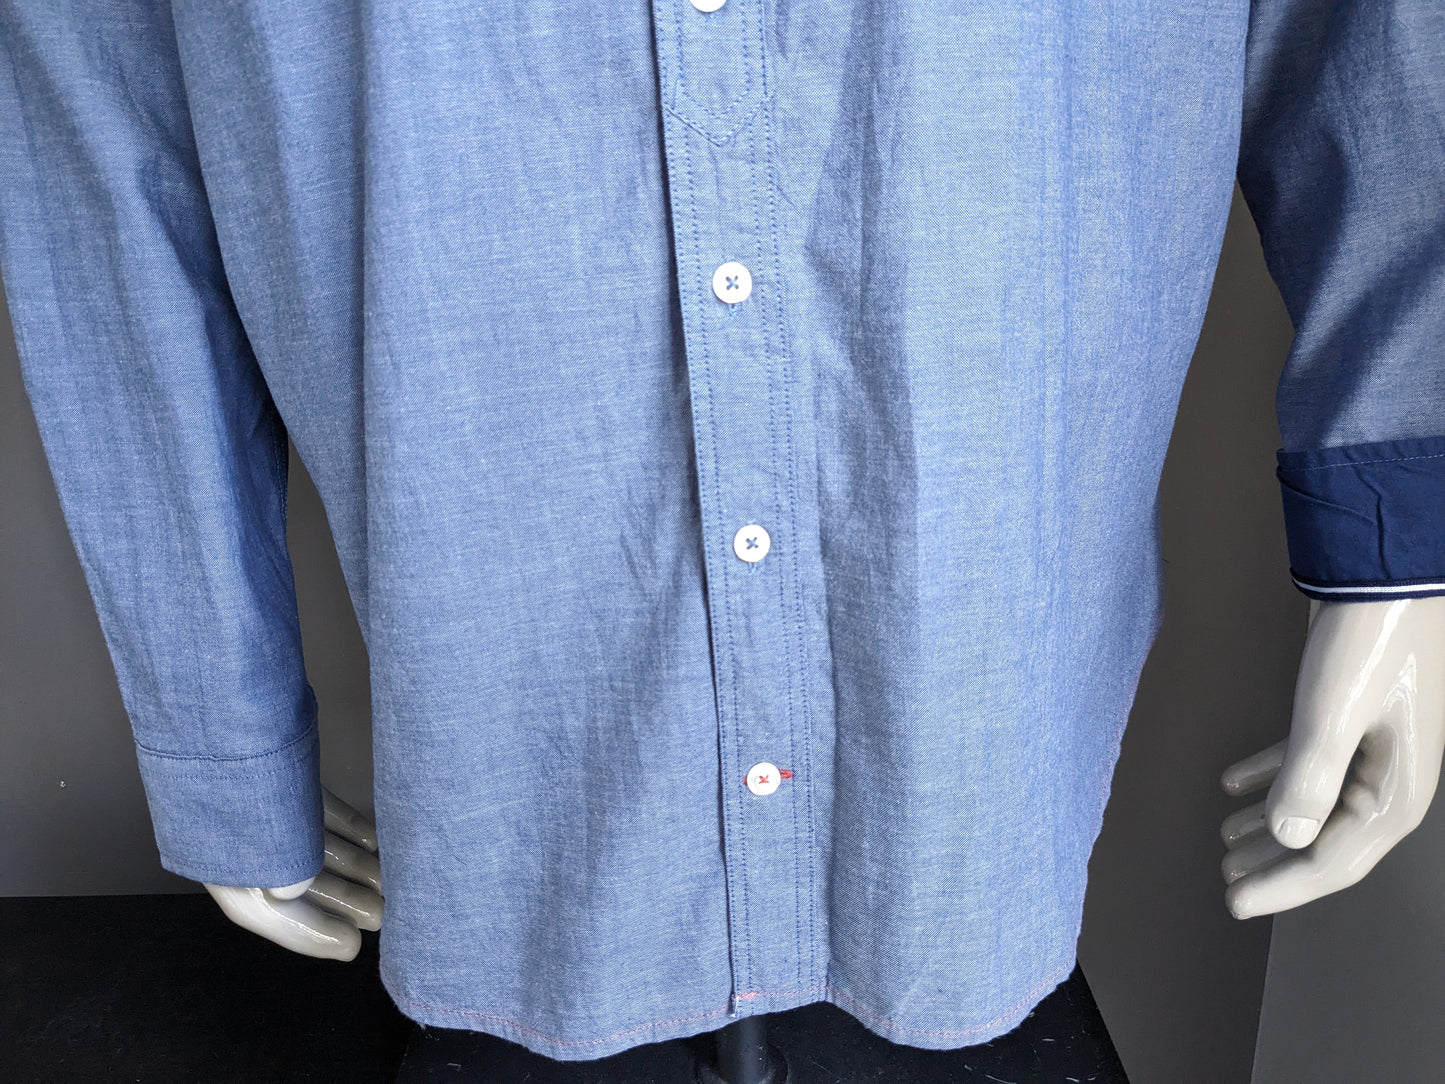 Sastre e hijo camisa. Azul mezclado con aplicaciones. Tamaño 2xl / xxl.